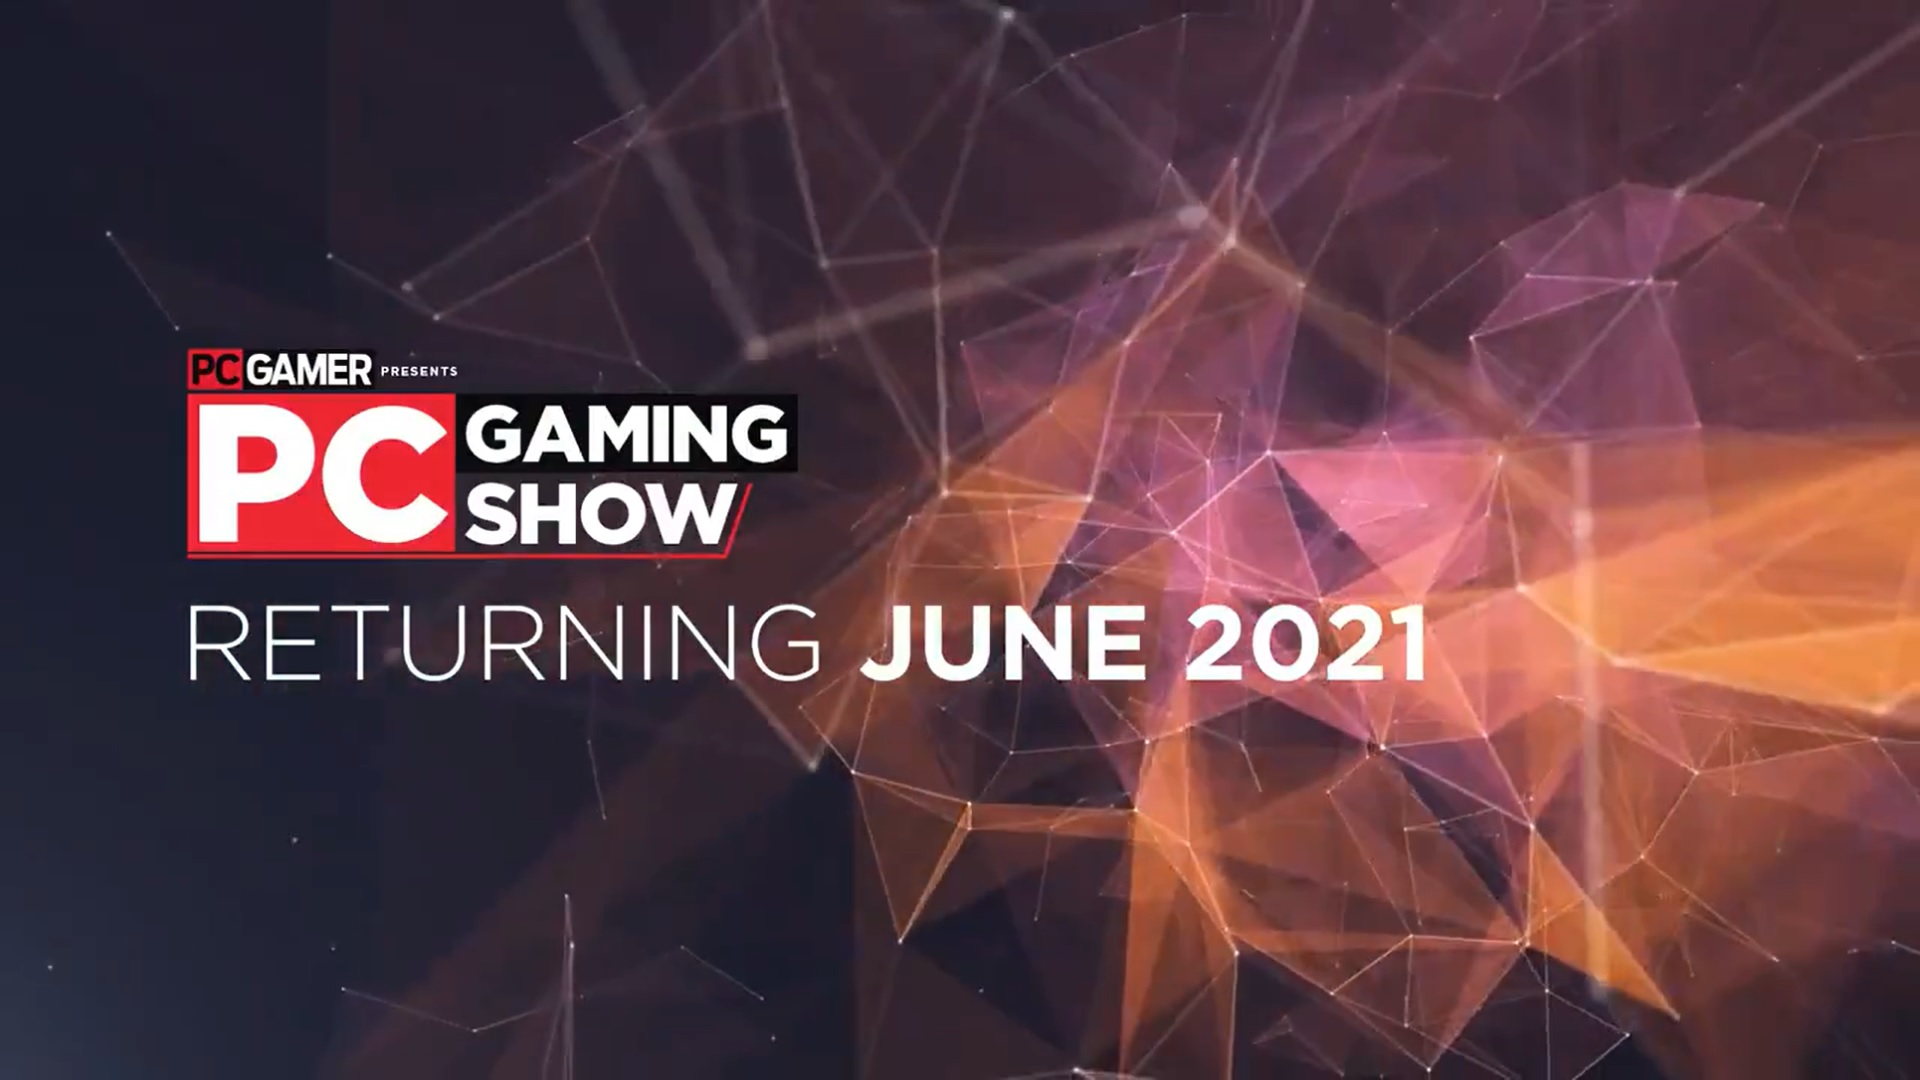 Выставка PC Gaming Show 2021 пройдет в июне 2021 года